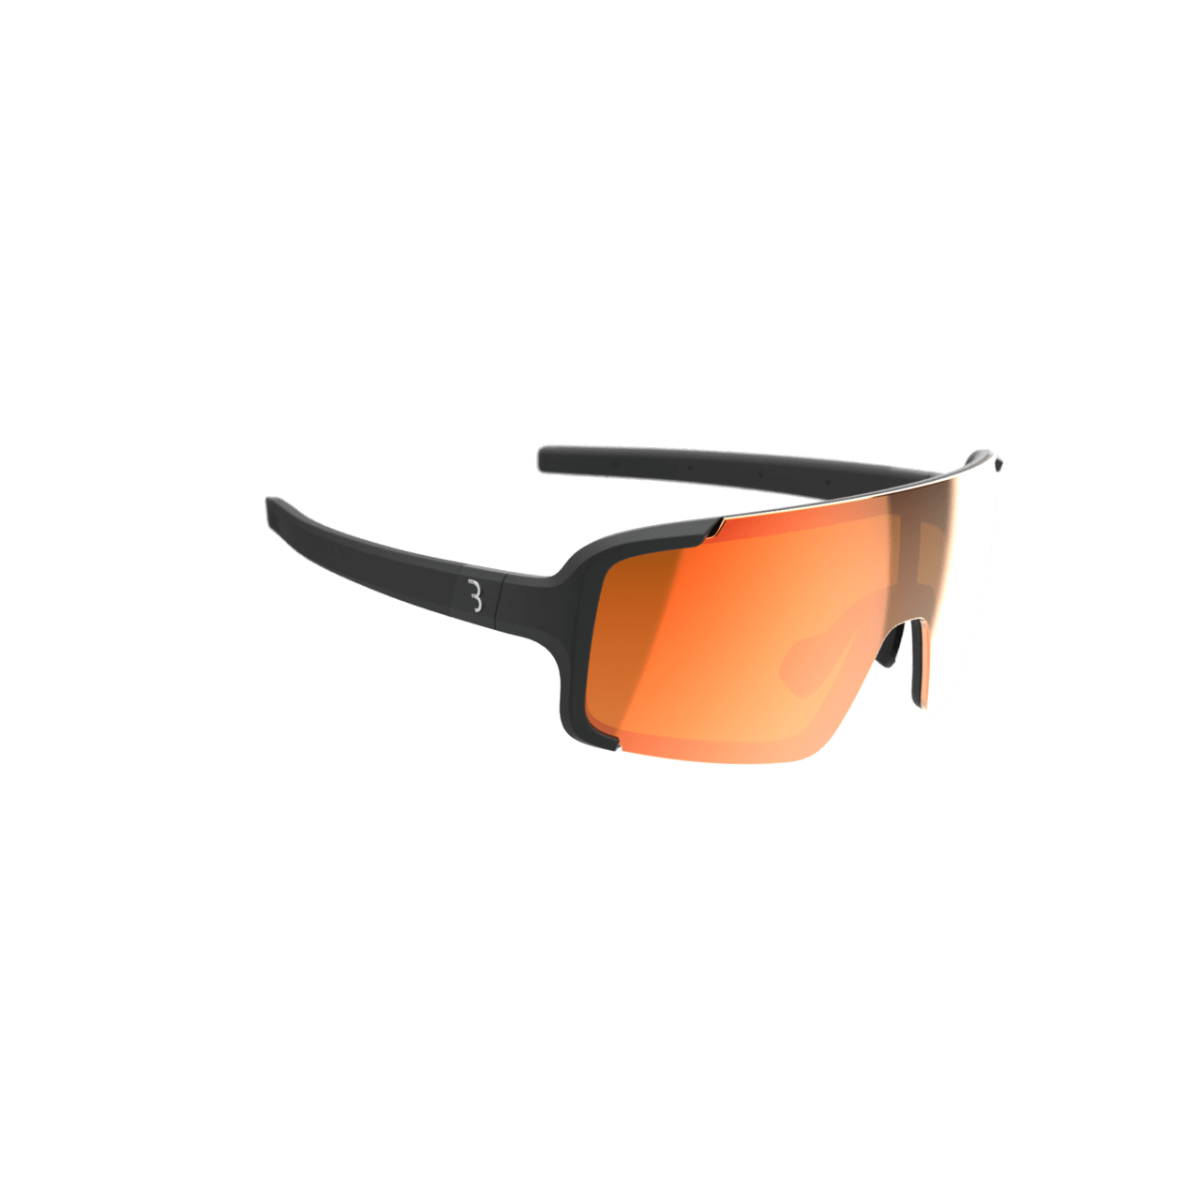 Saules brilles BBB BSG-69 sports glasses Chester MLC red orange matt black